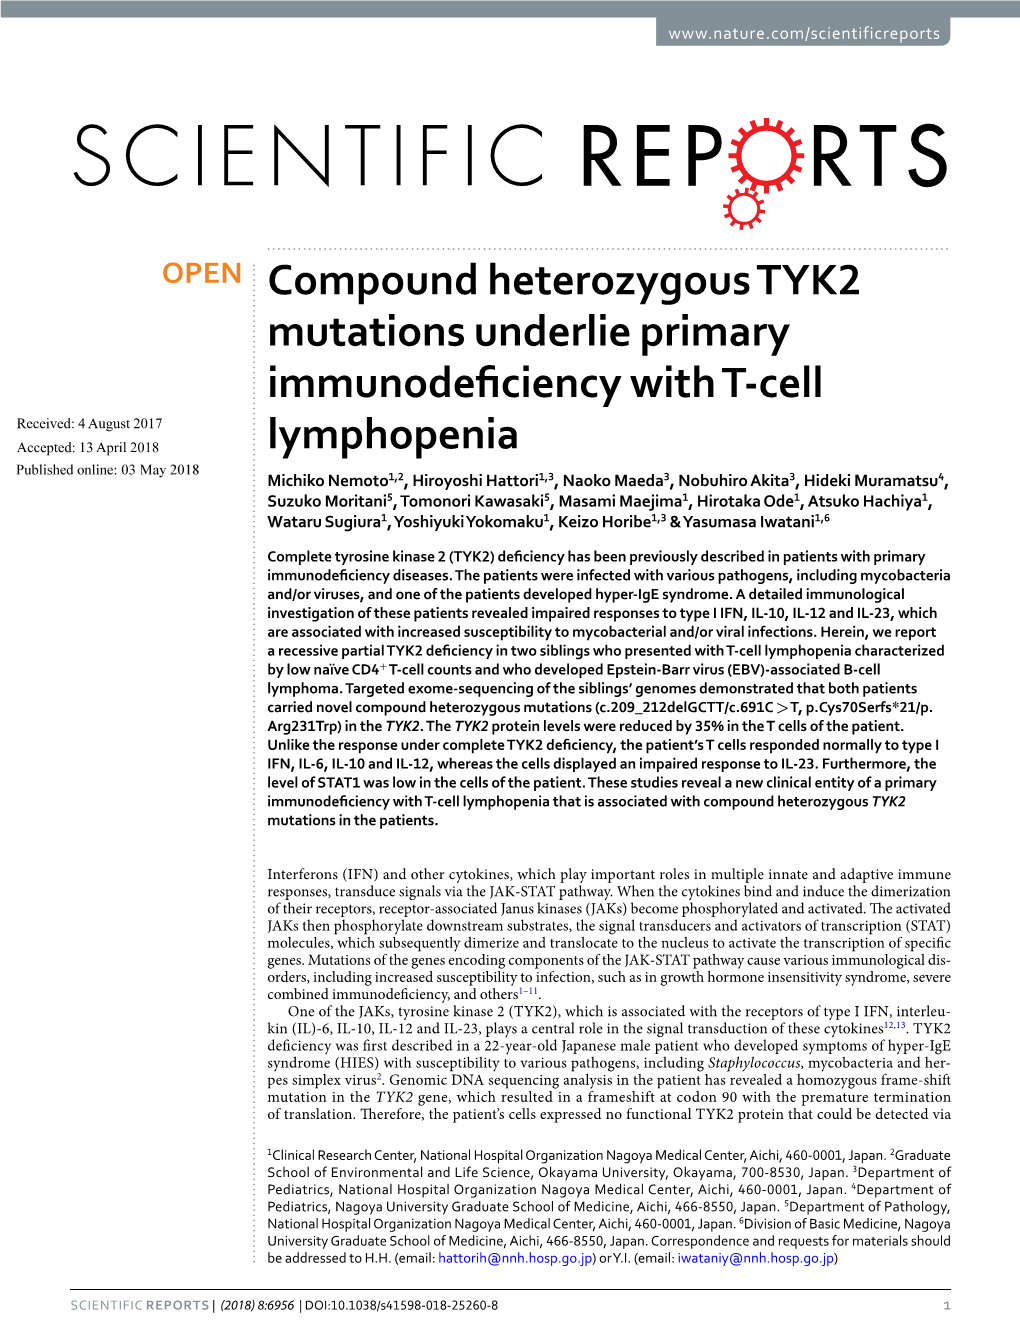 Compound Heterozygous TYK2 Mutations Underlie Primary